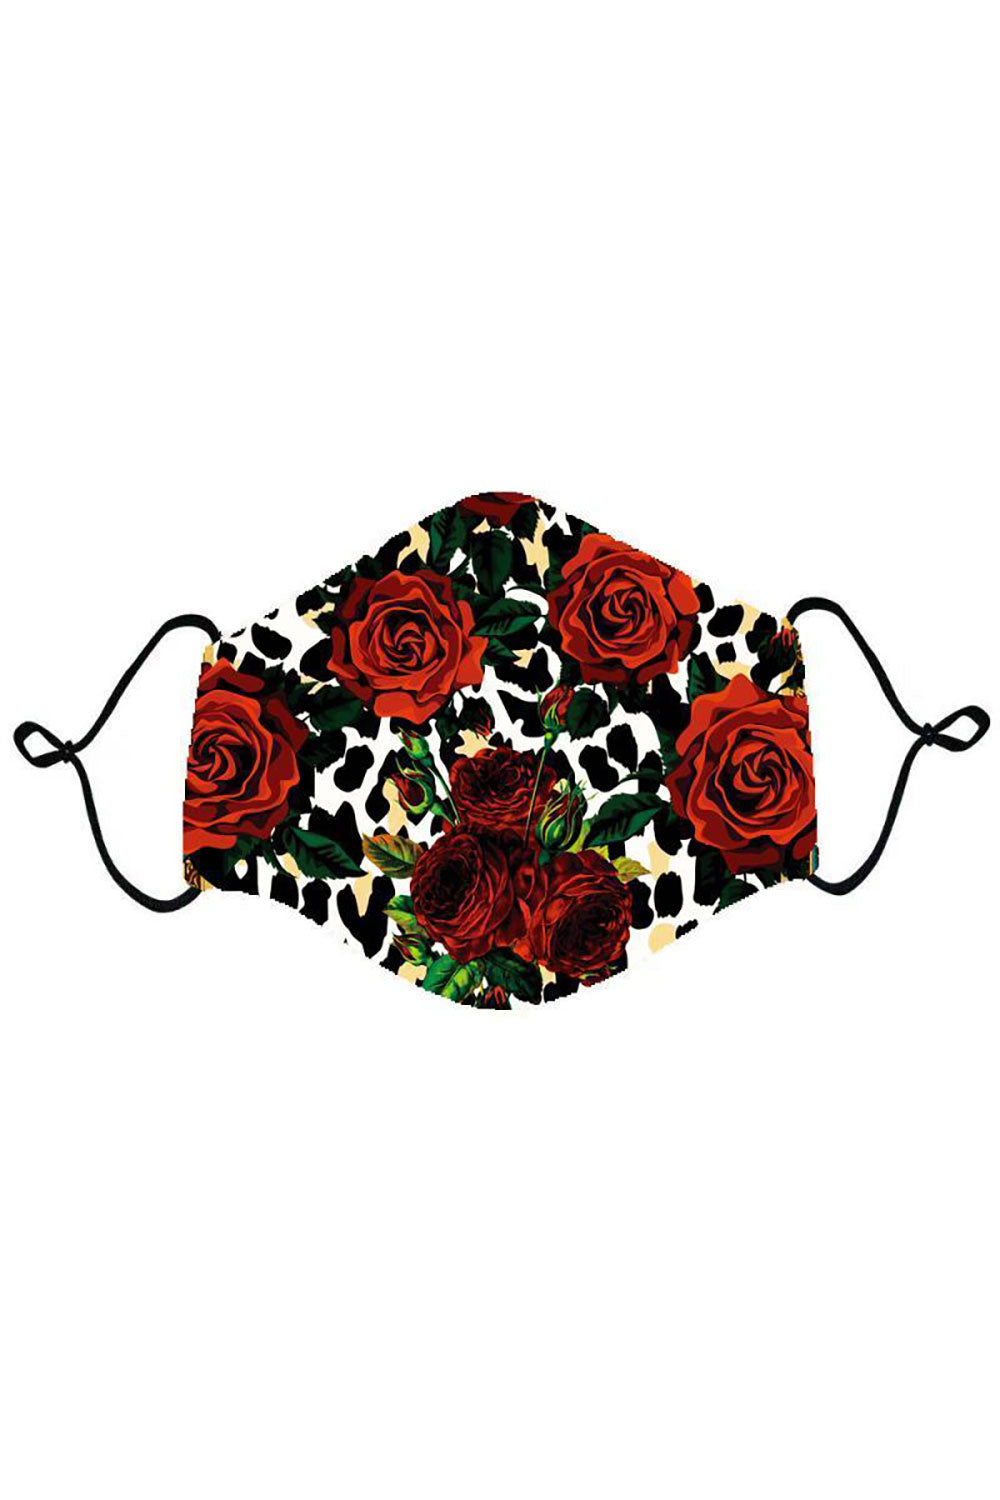 BARABAS Men Mask Roses And Thorns Mask Multi Color MSP964